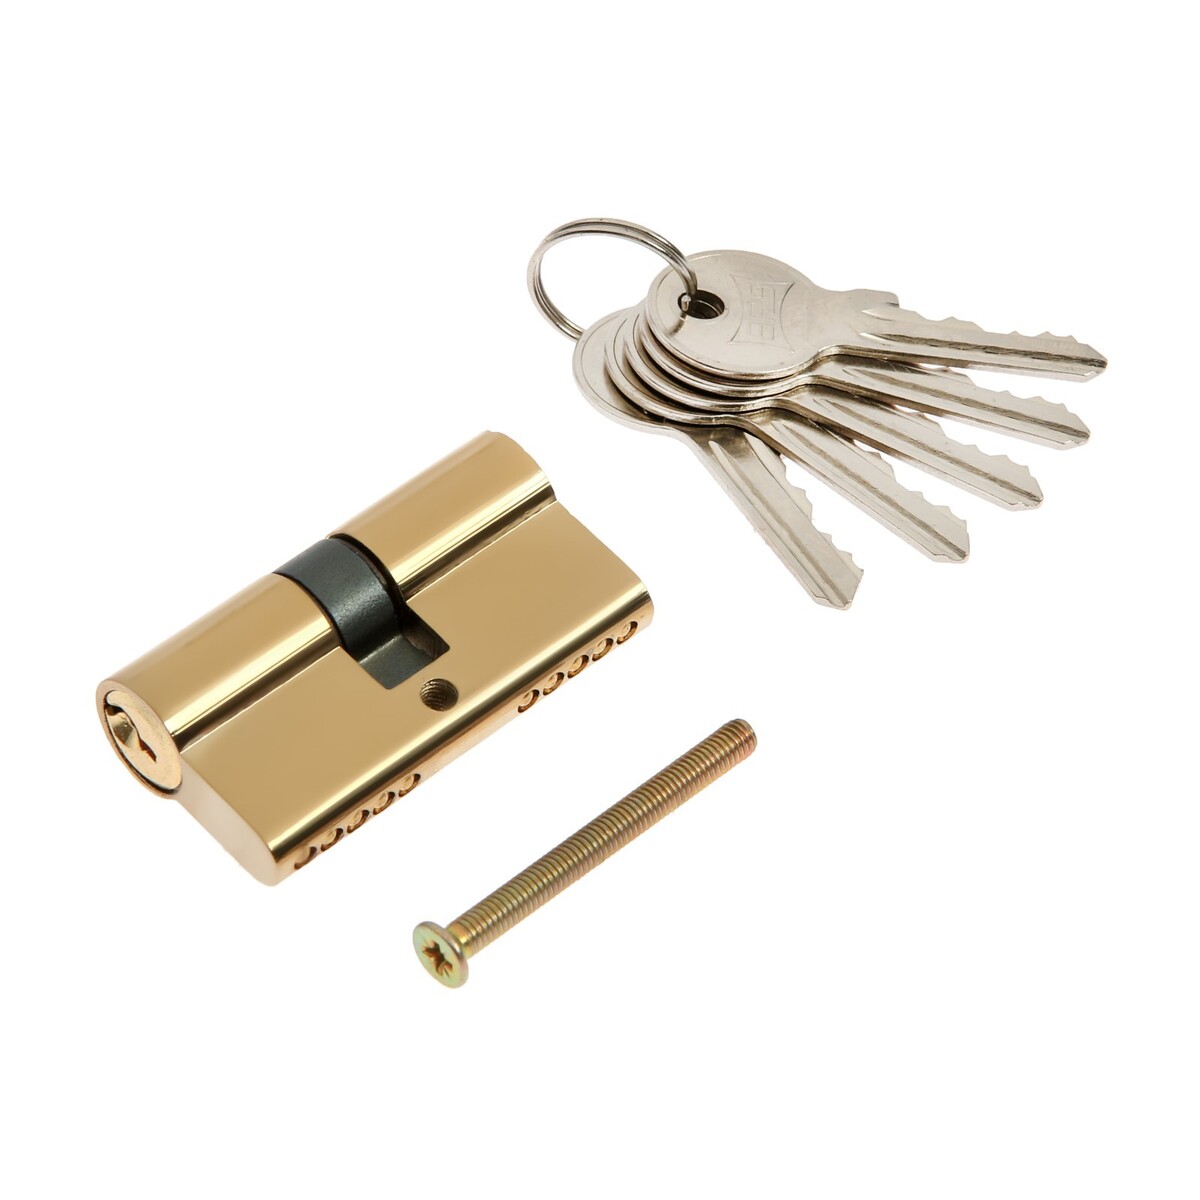 Цилиндровый механизм, 60 мм, английский ключ, 5 ключей, цвет золото замок врезной зенит зв4 3 04 00 00000517 ручка в комплекте цилиндровый